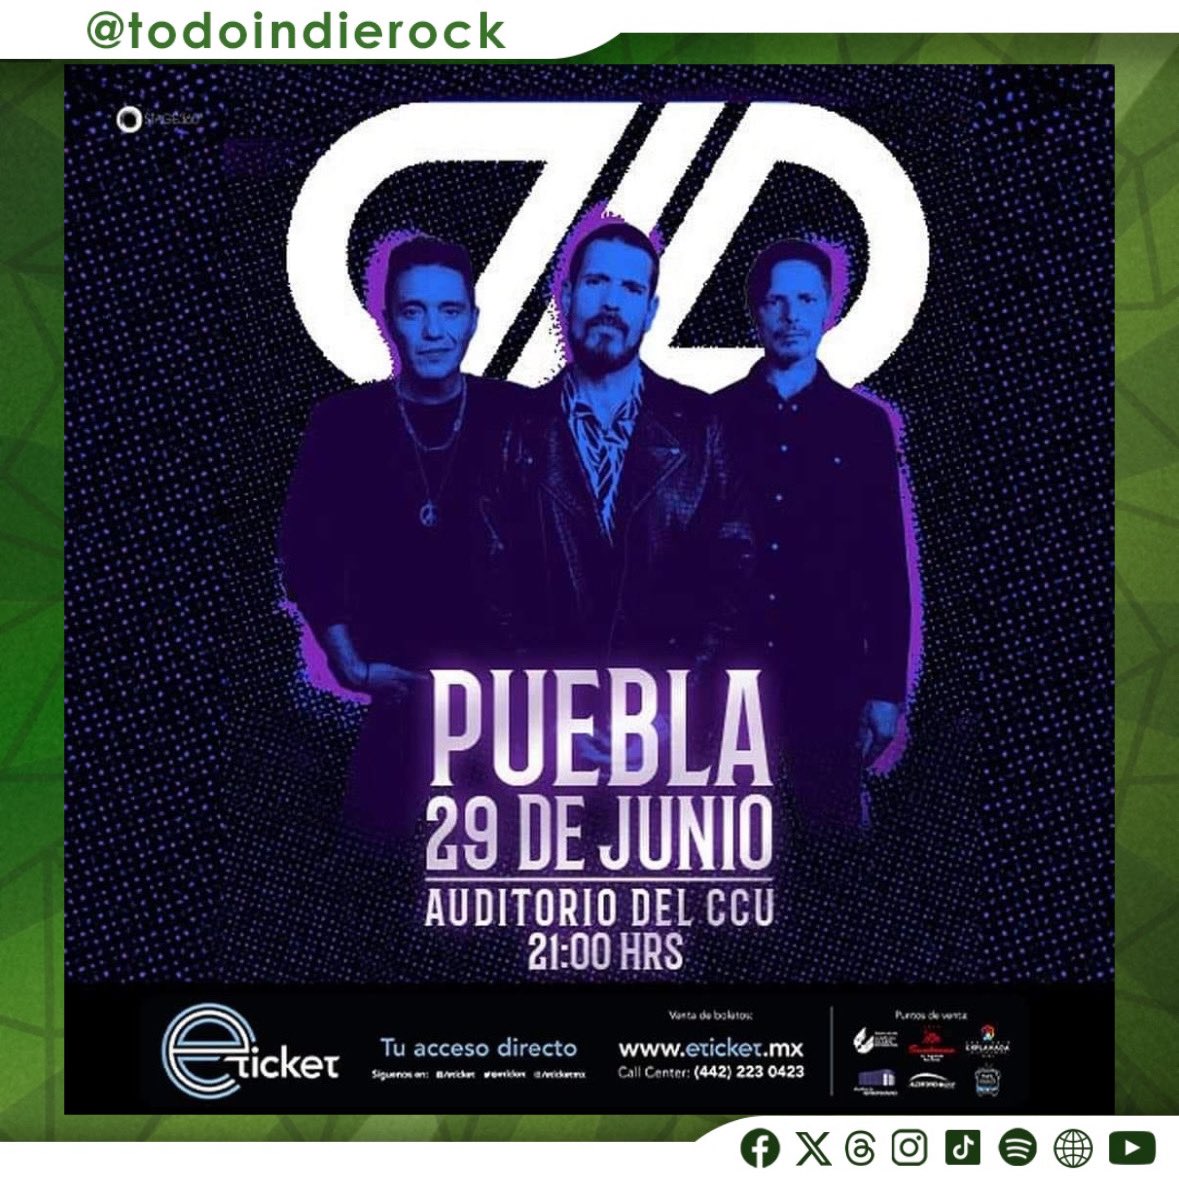 🚨No lo olvides, este 29 de junio llega a #Puebla la agrupación @dldmexico 🎤👇🏻

🎫 Tickets en @eticket 
🔗 eticket.mx/masinformacion…
💿 @ccubuap | @Stage360mx 

#TodoIndieRock